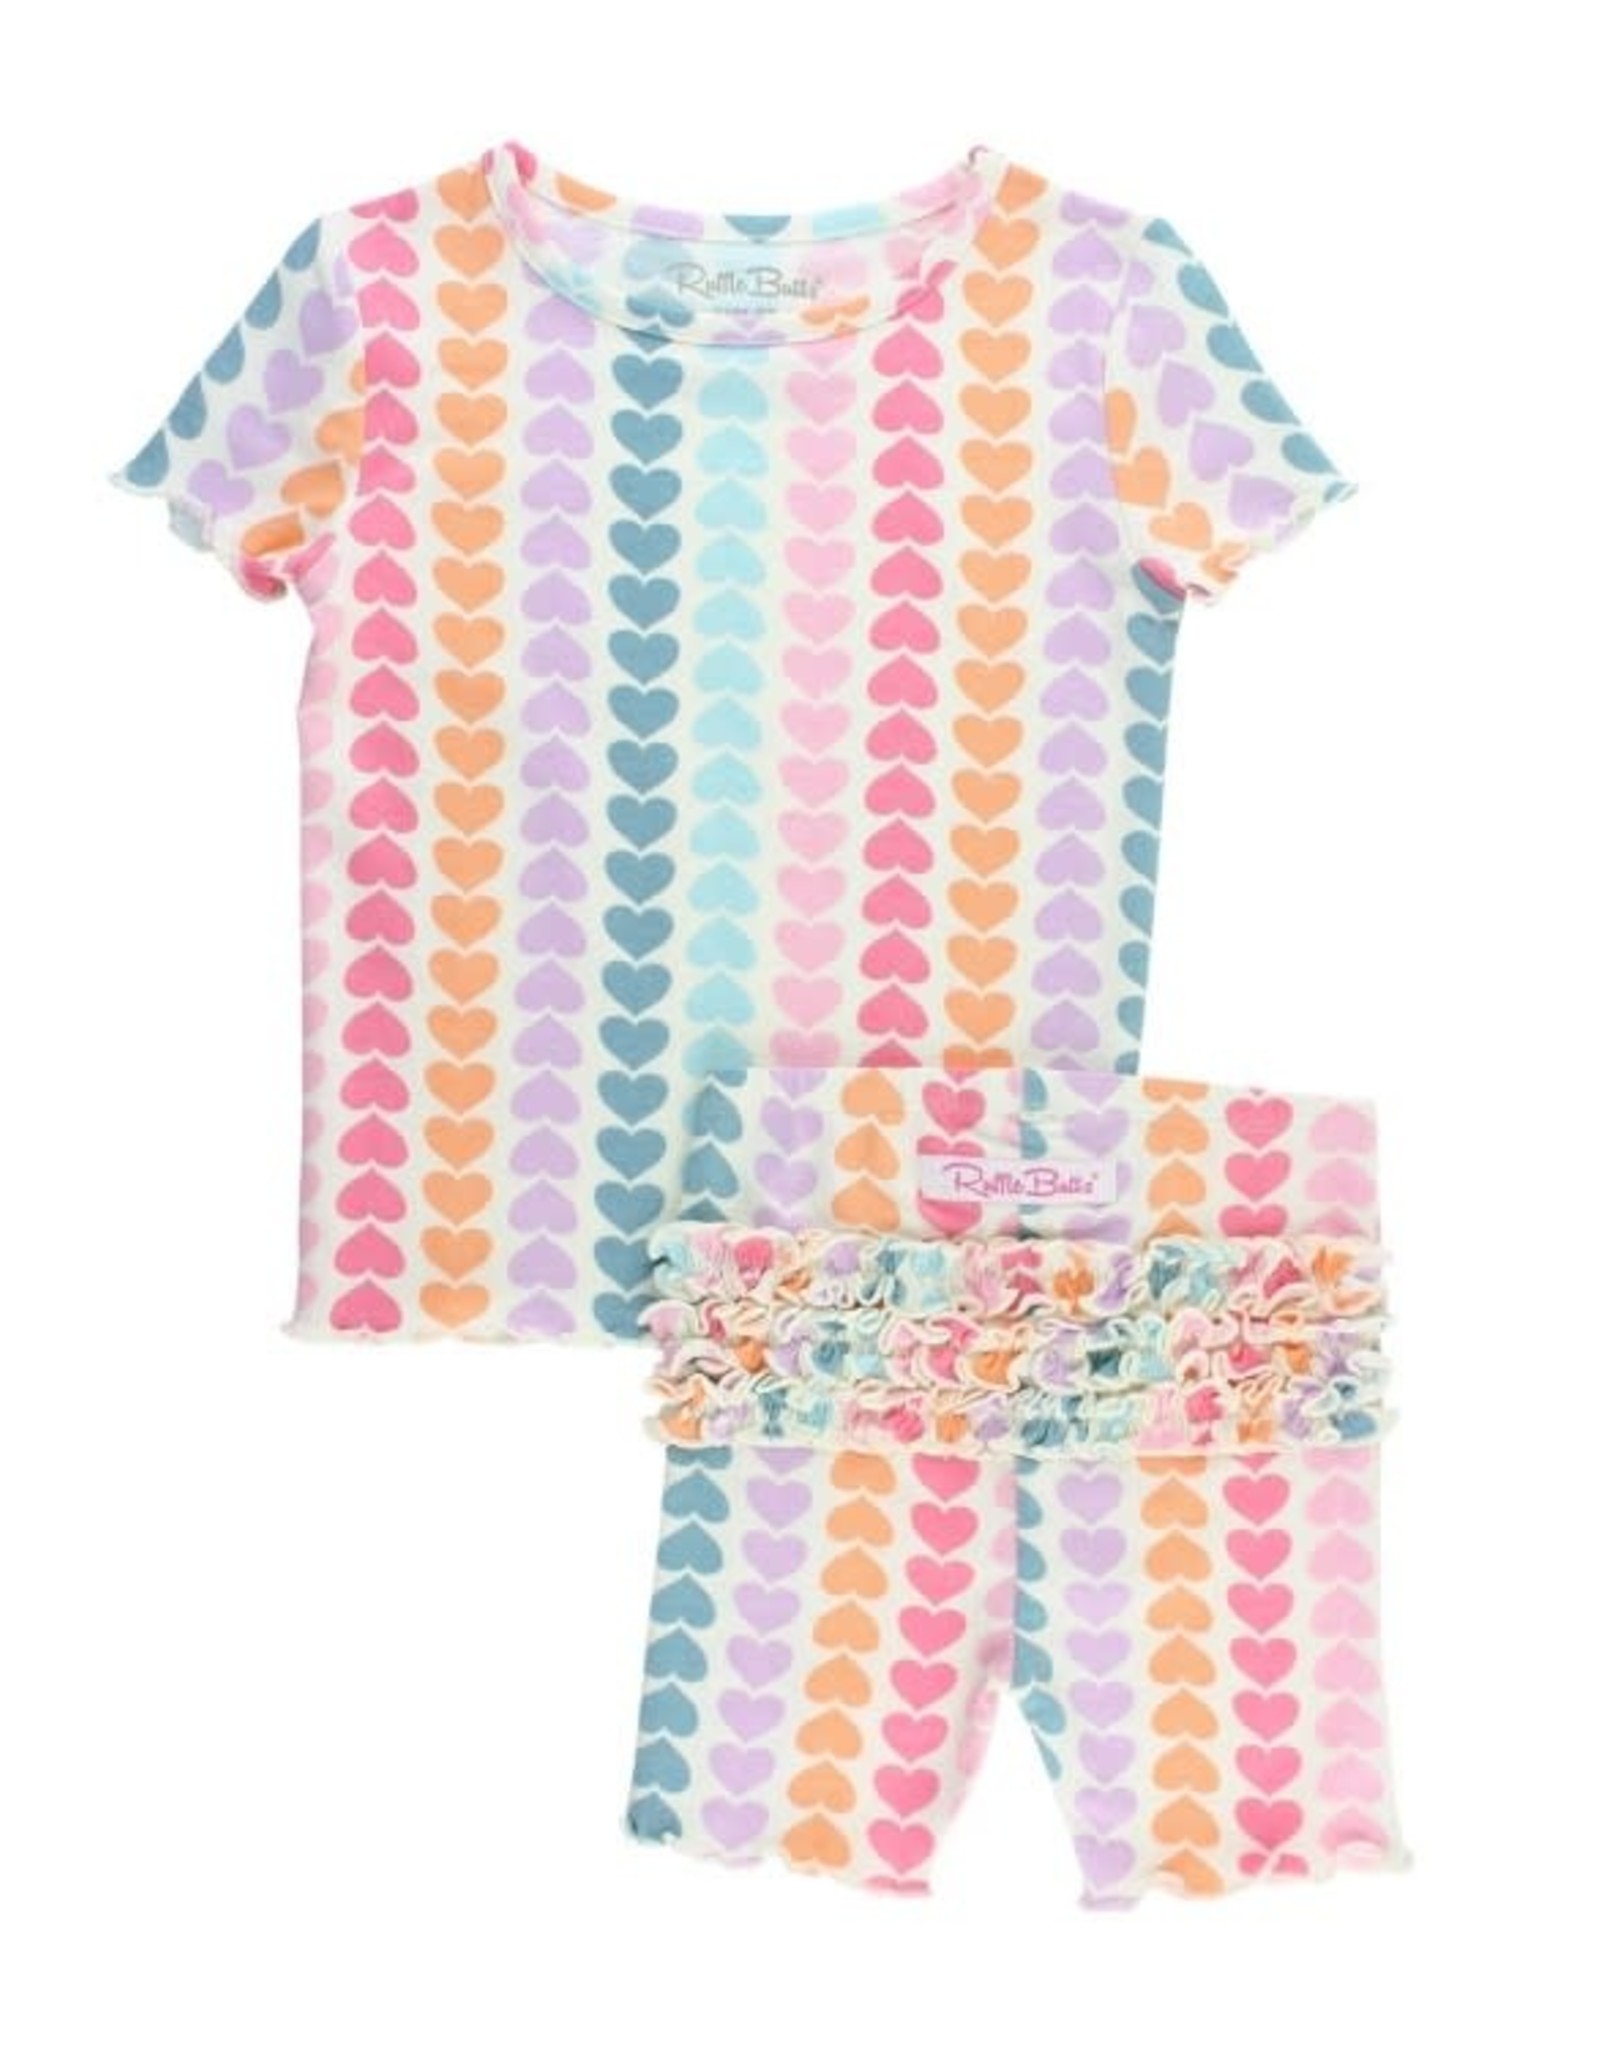 RuffleButts Rainbow Hearts Snuggly 2pc Ruffled Pajamas